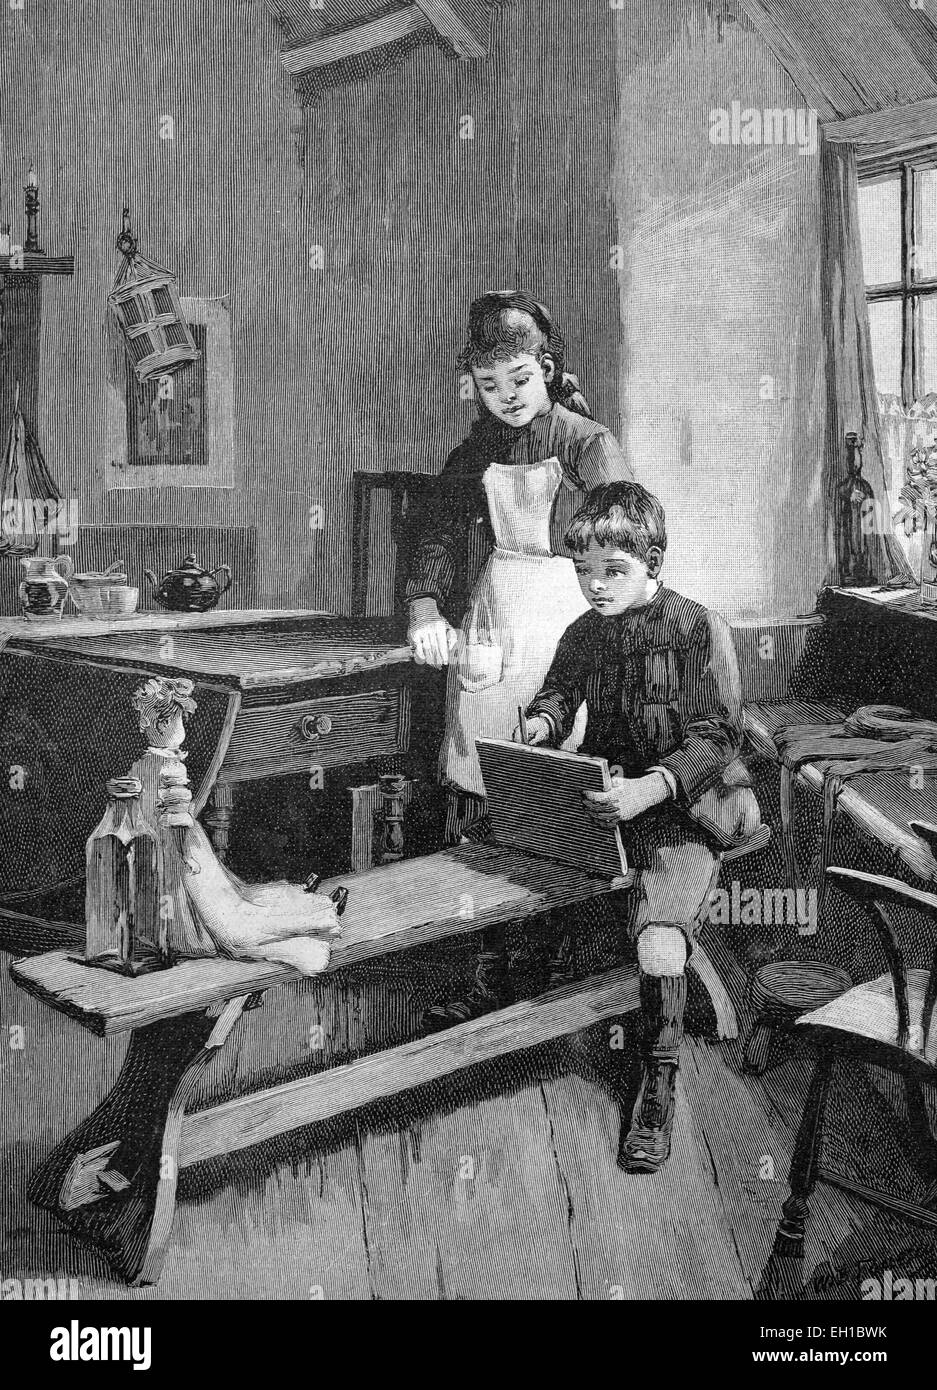 Boy drawing sa sœur, poupée, illustration historique vers 1893 Banque D'Images